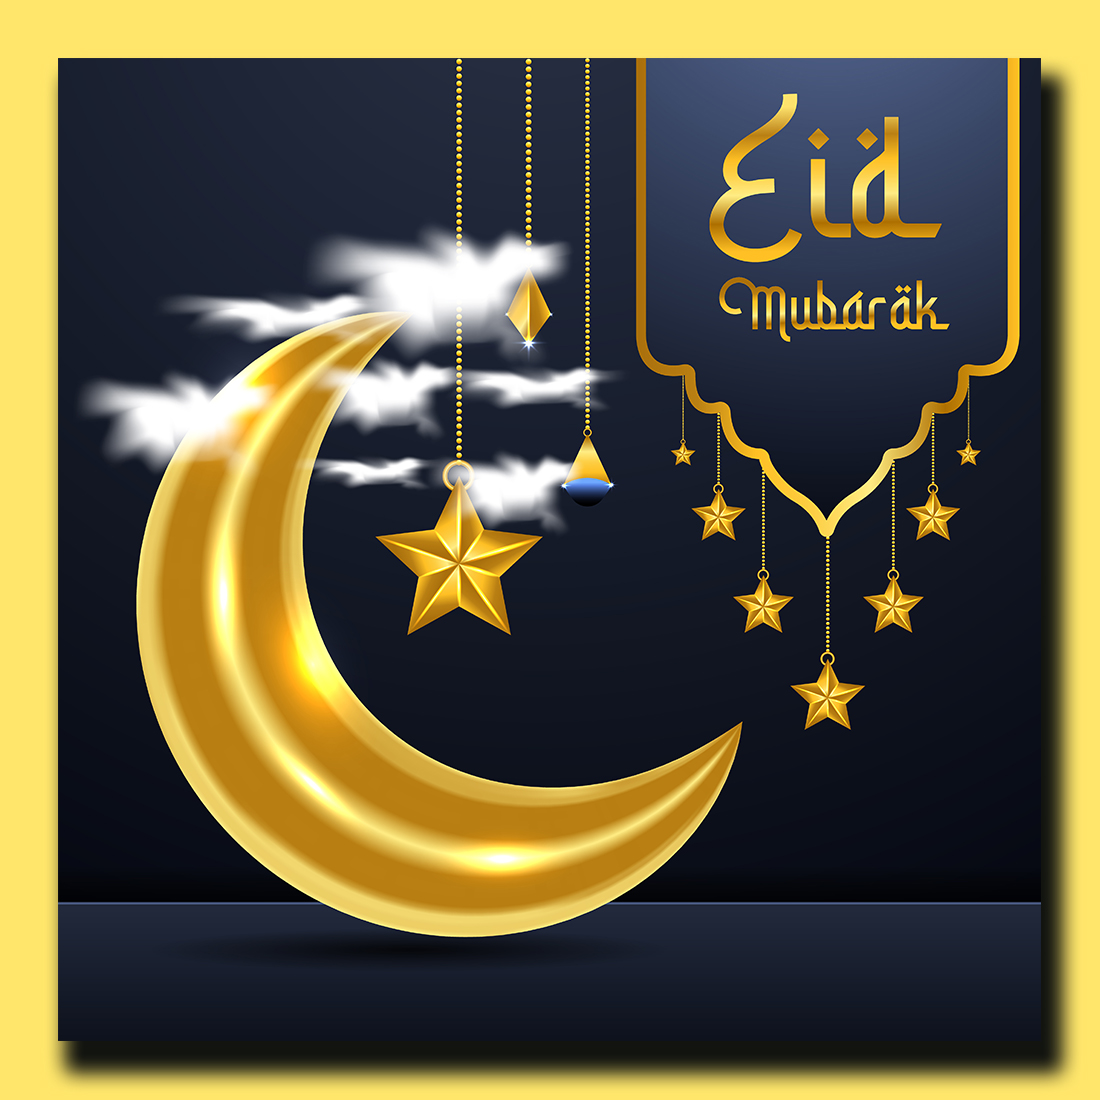 Eid Mubarak Greeting Social Media Post preview image.